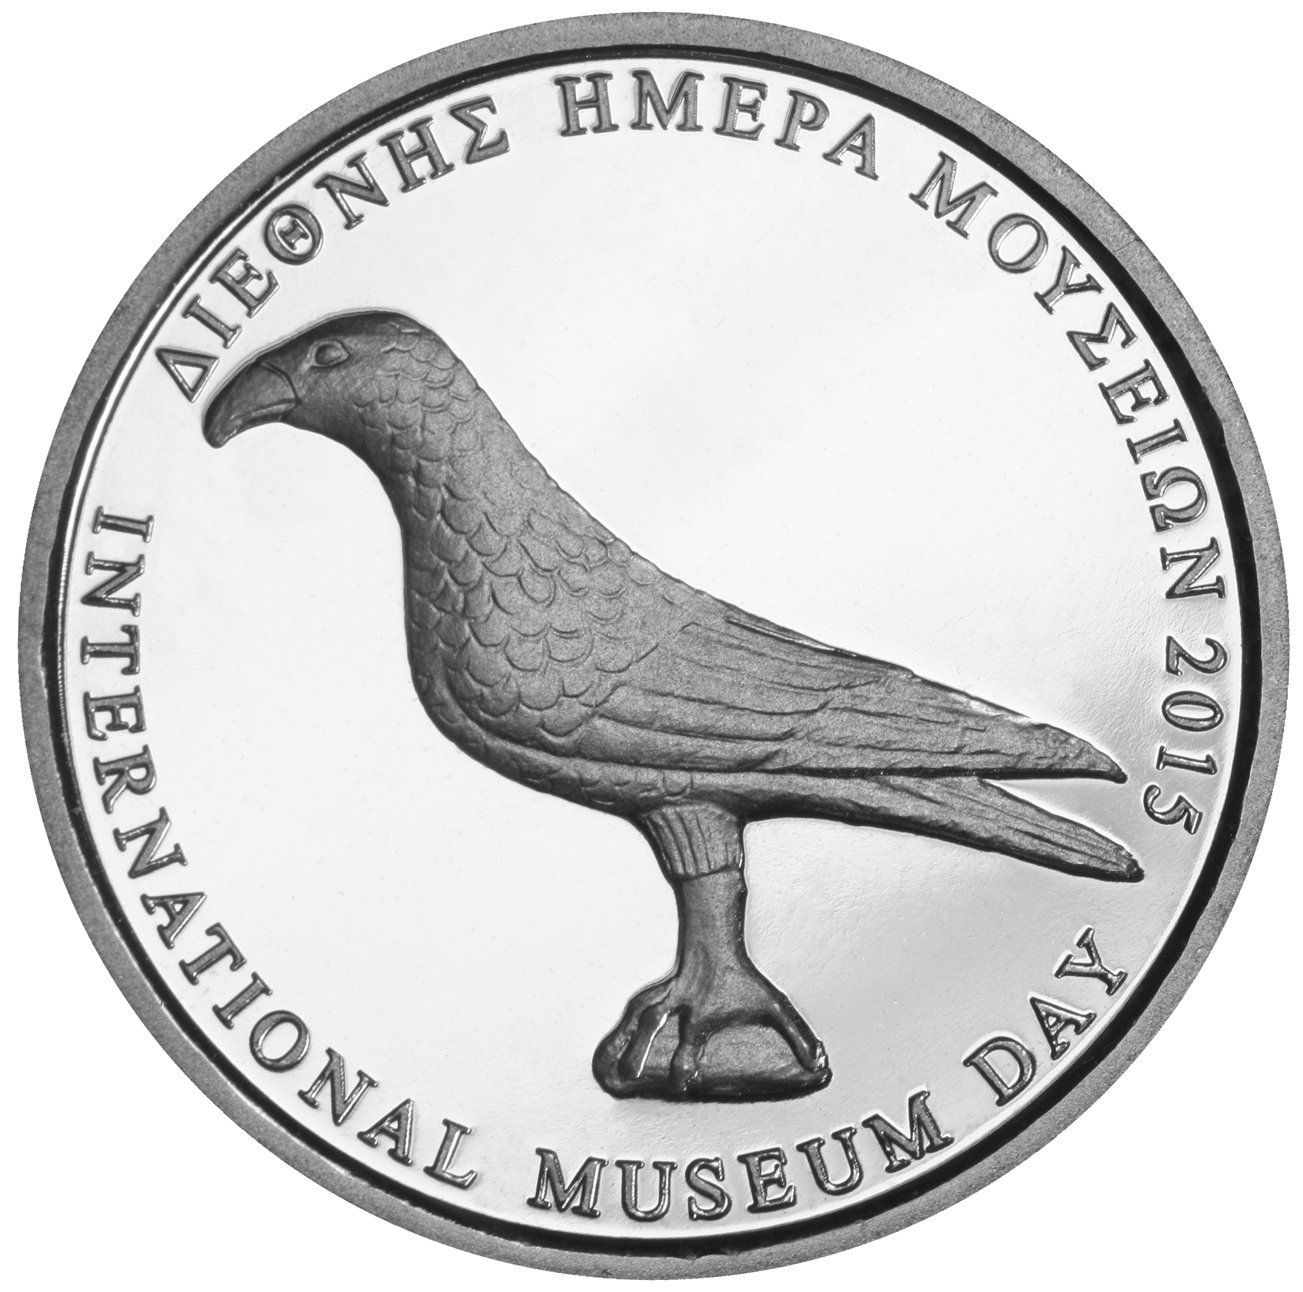 Το Μουσείο Ακρόπολης γιορτάζει την Διεθνή Ημέρα Μουσείων